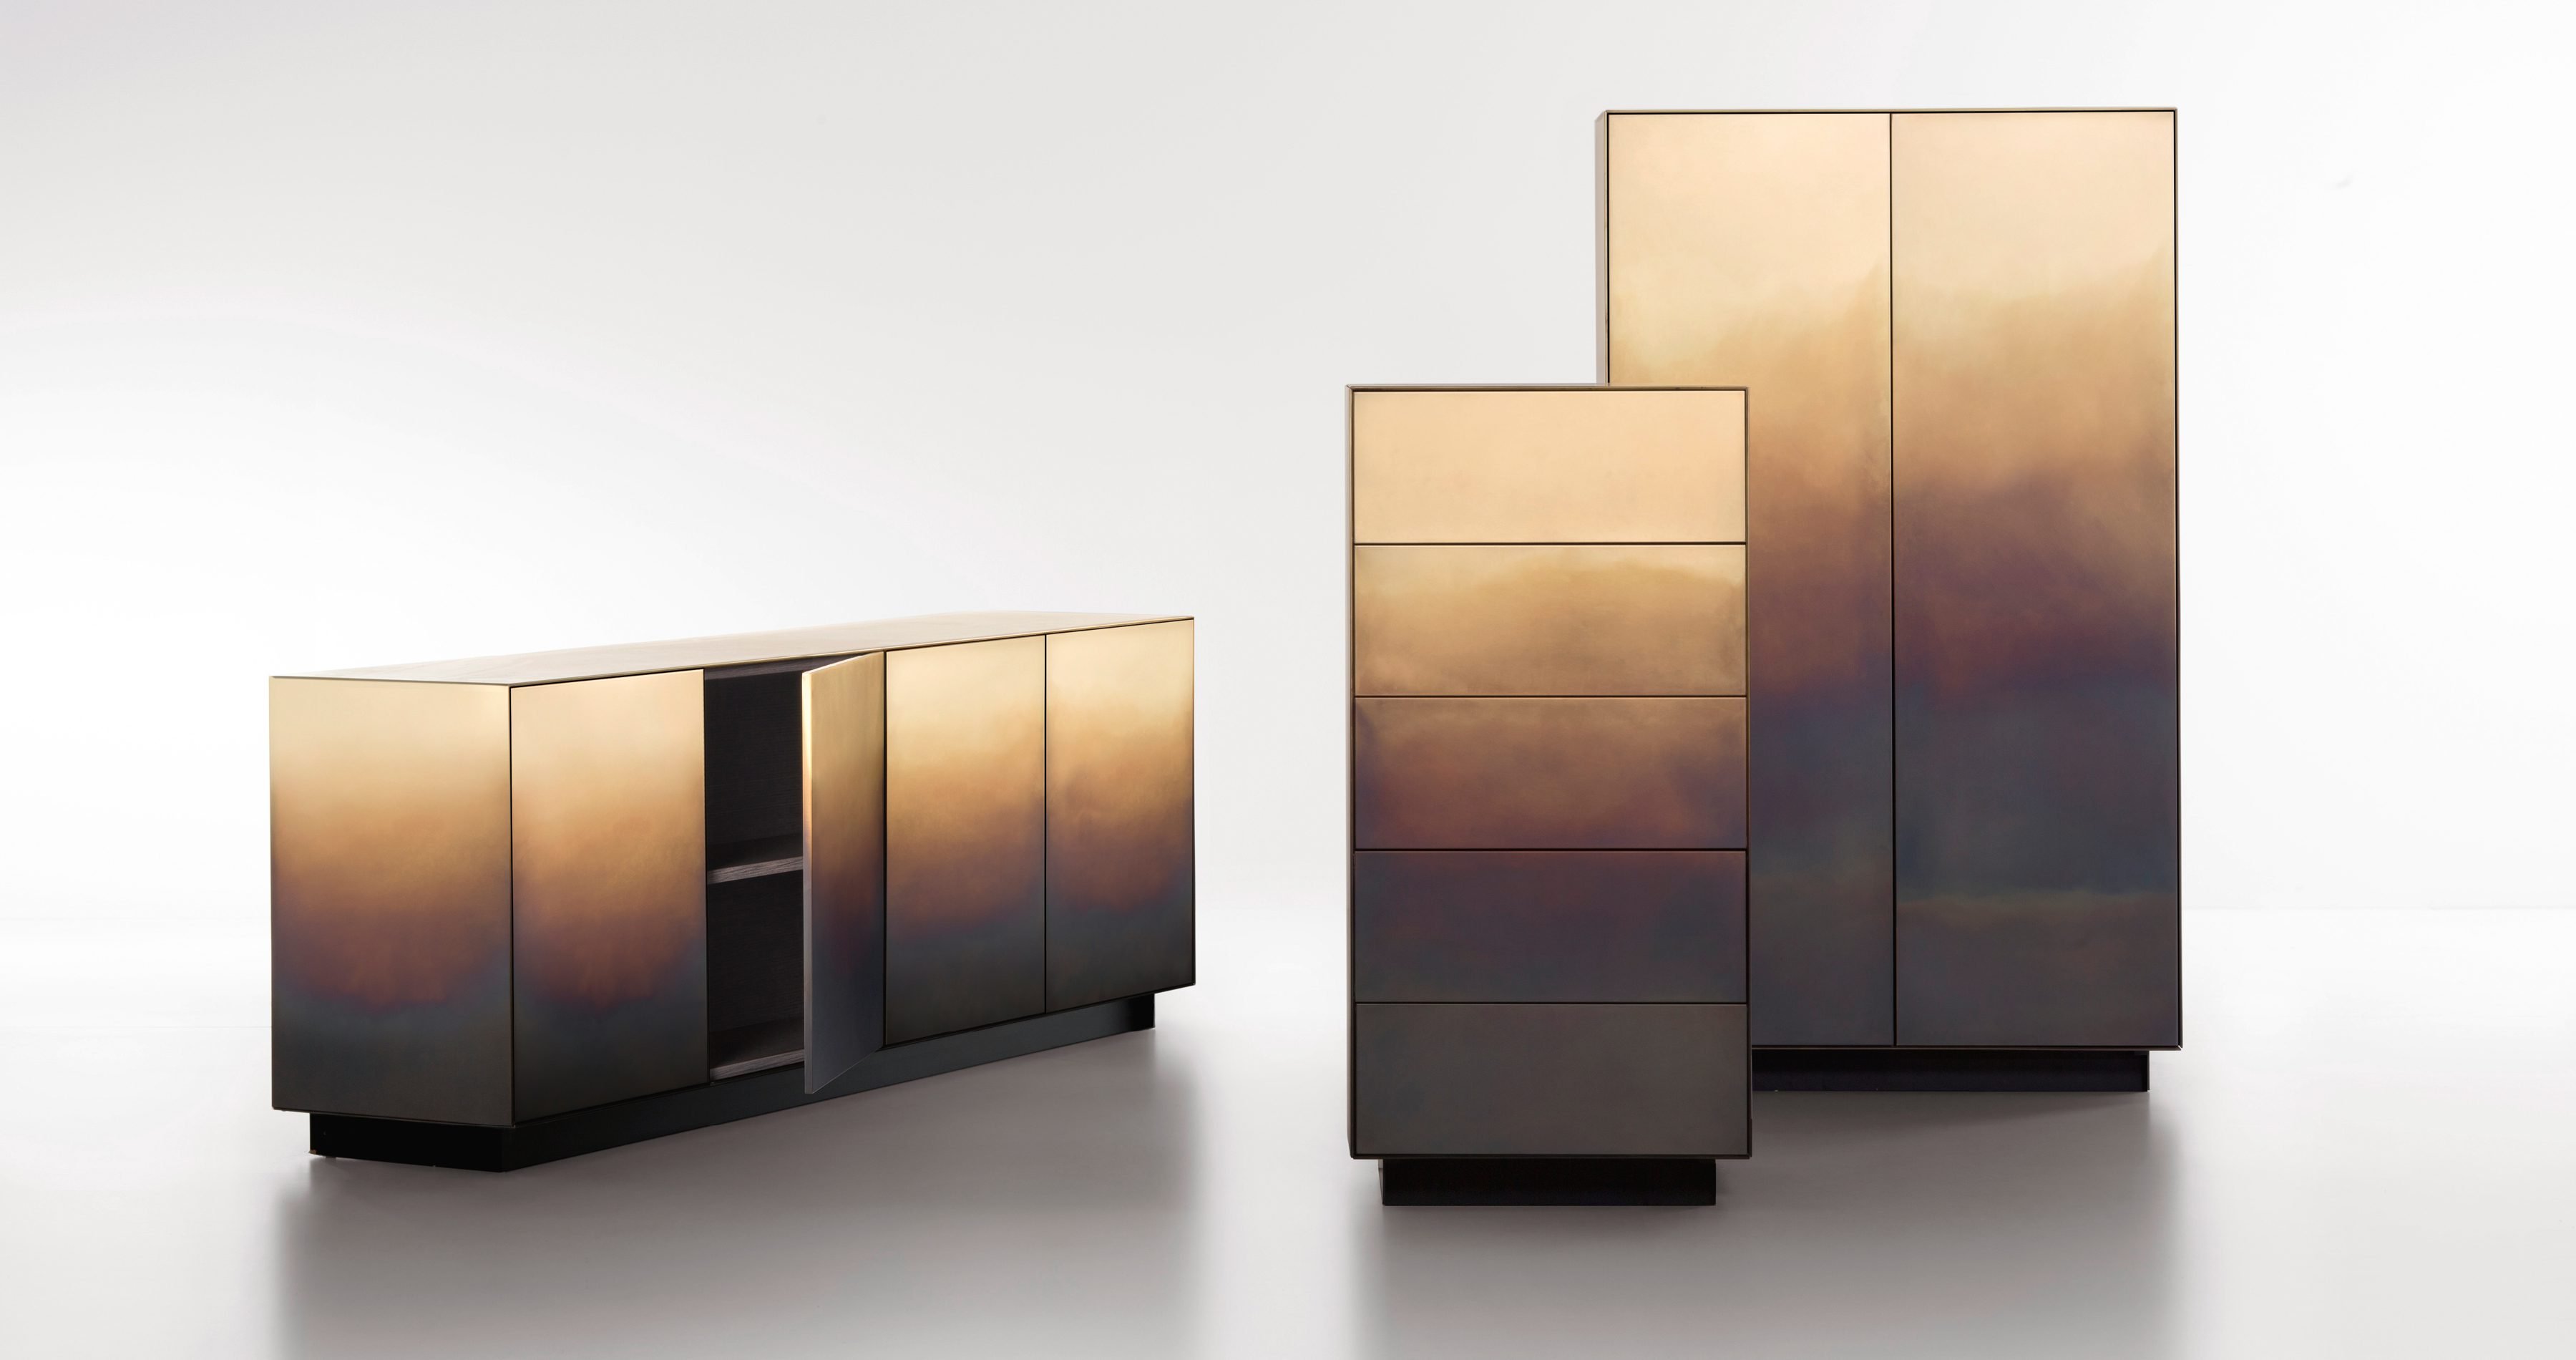 Marea Cabinet from De Castelli, designed by Zanellato & Bortotto